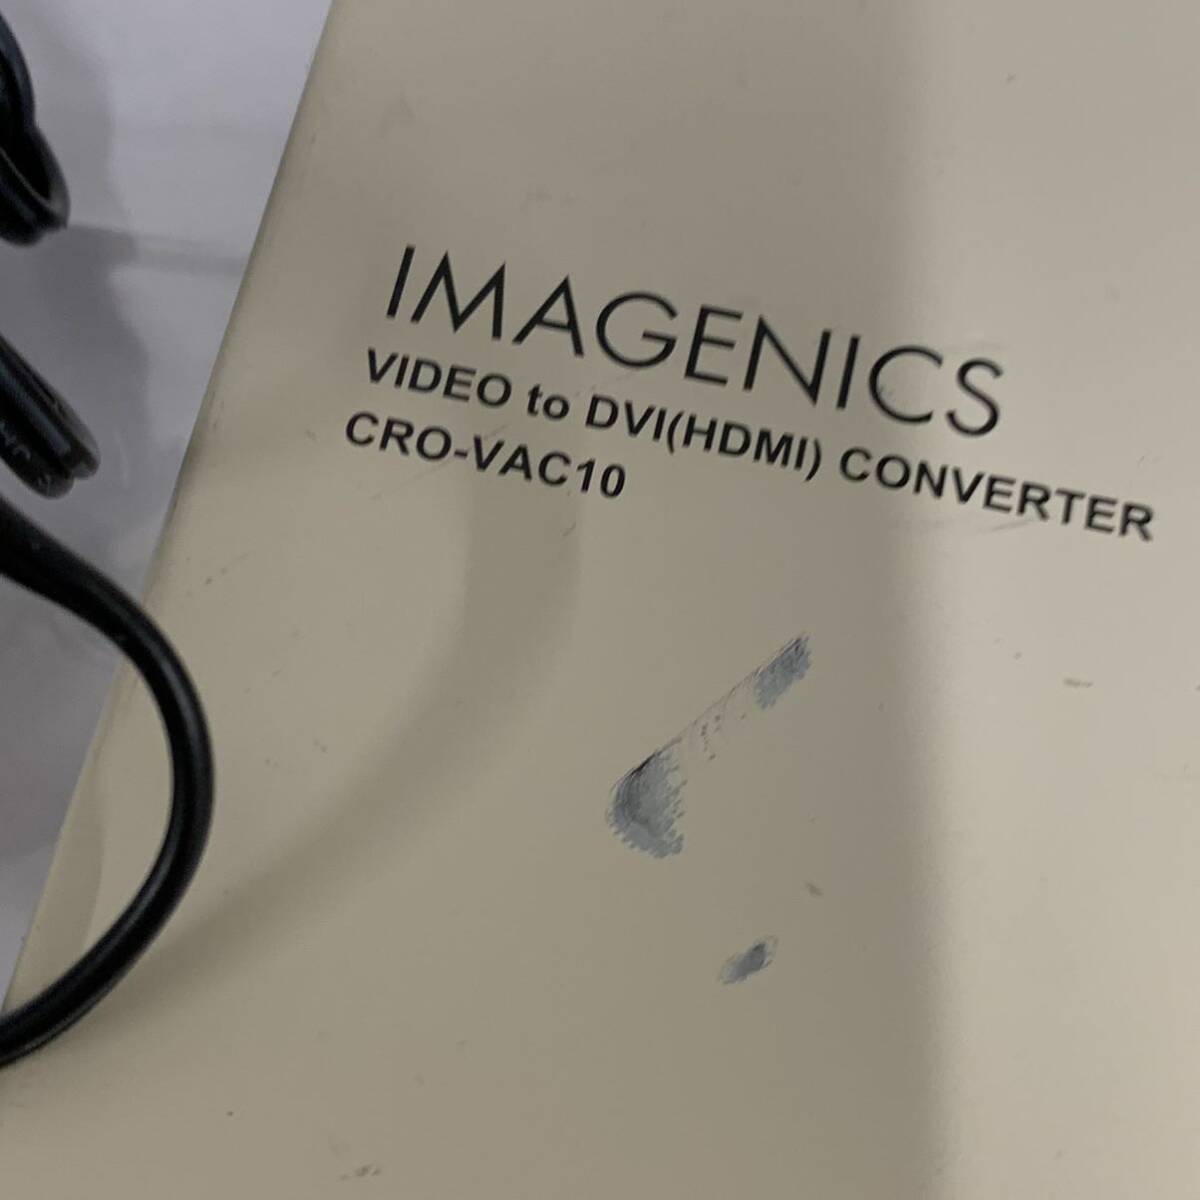  электризация OK IMAGENICS образ niksIMAGENICS/ образ niksCRO-VAC10 видео вход DVI HDMI сменный мощность изменение контейнер ka15